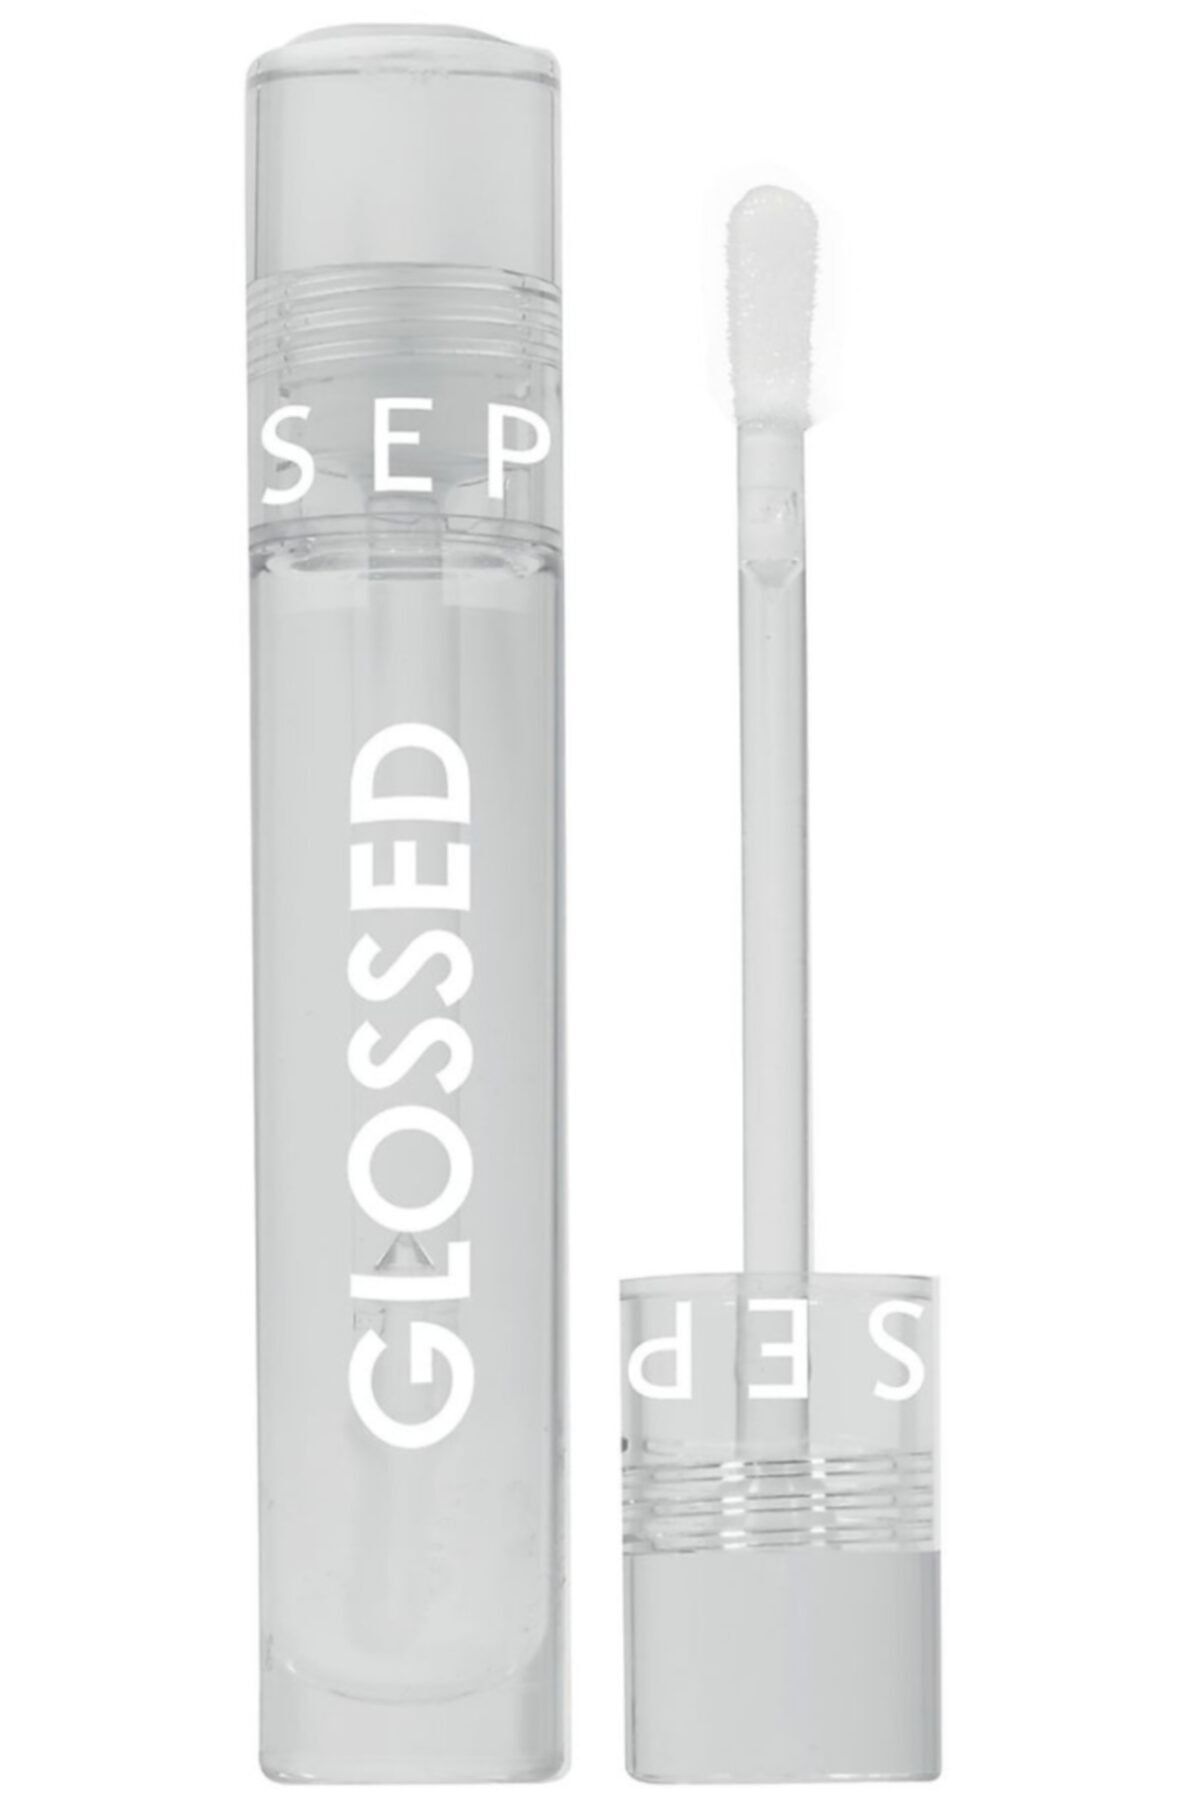 Sephora Glossed Lip Gloss